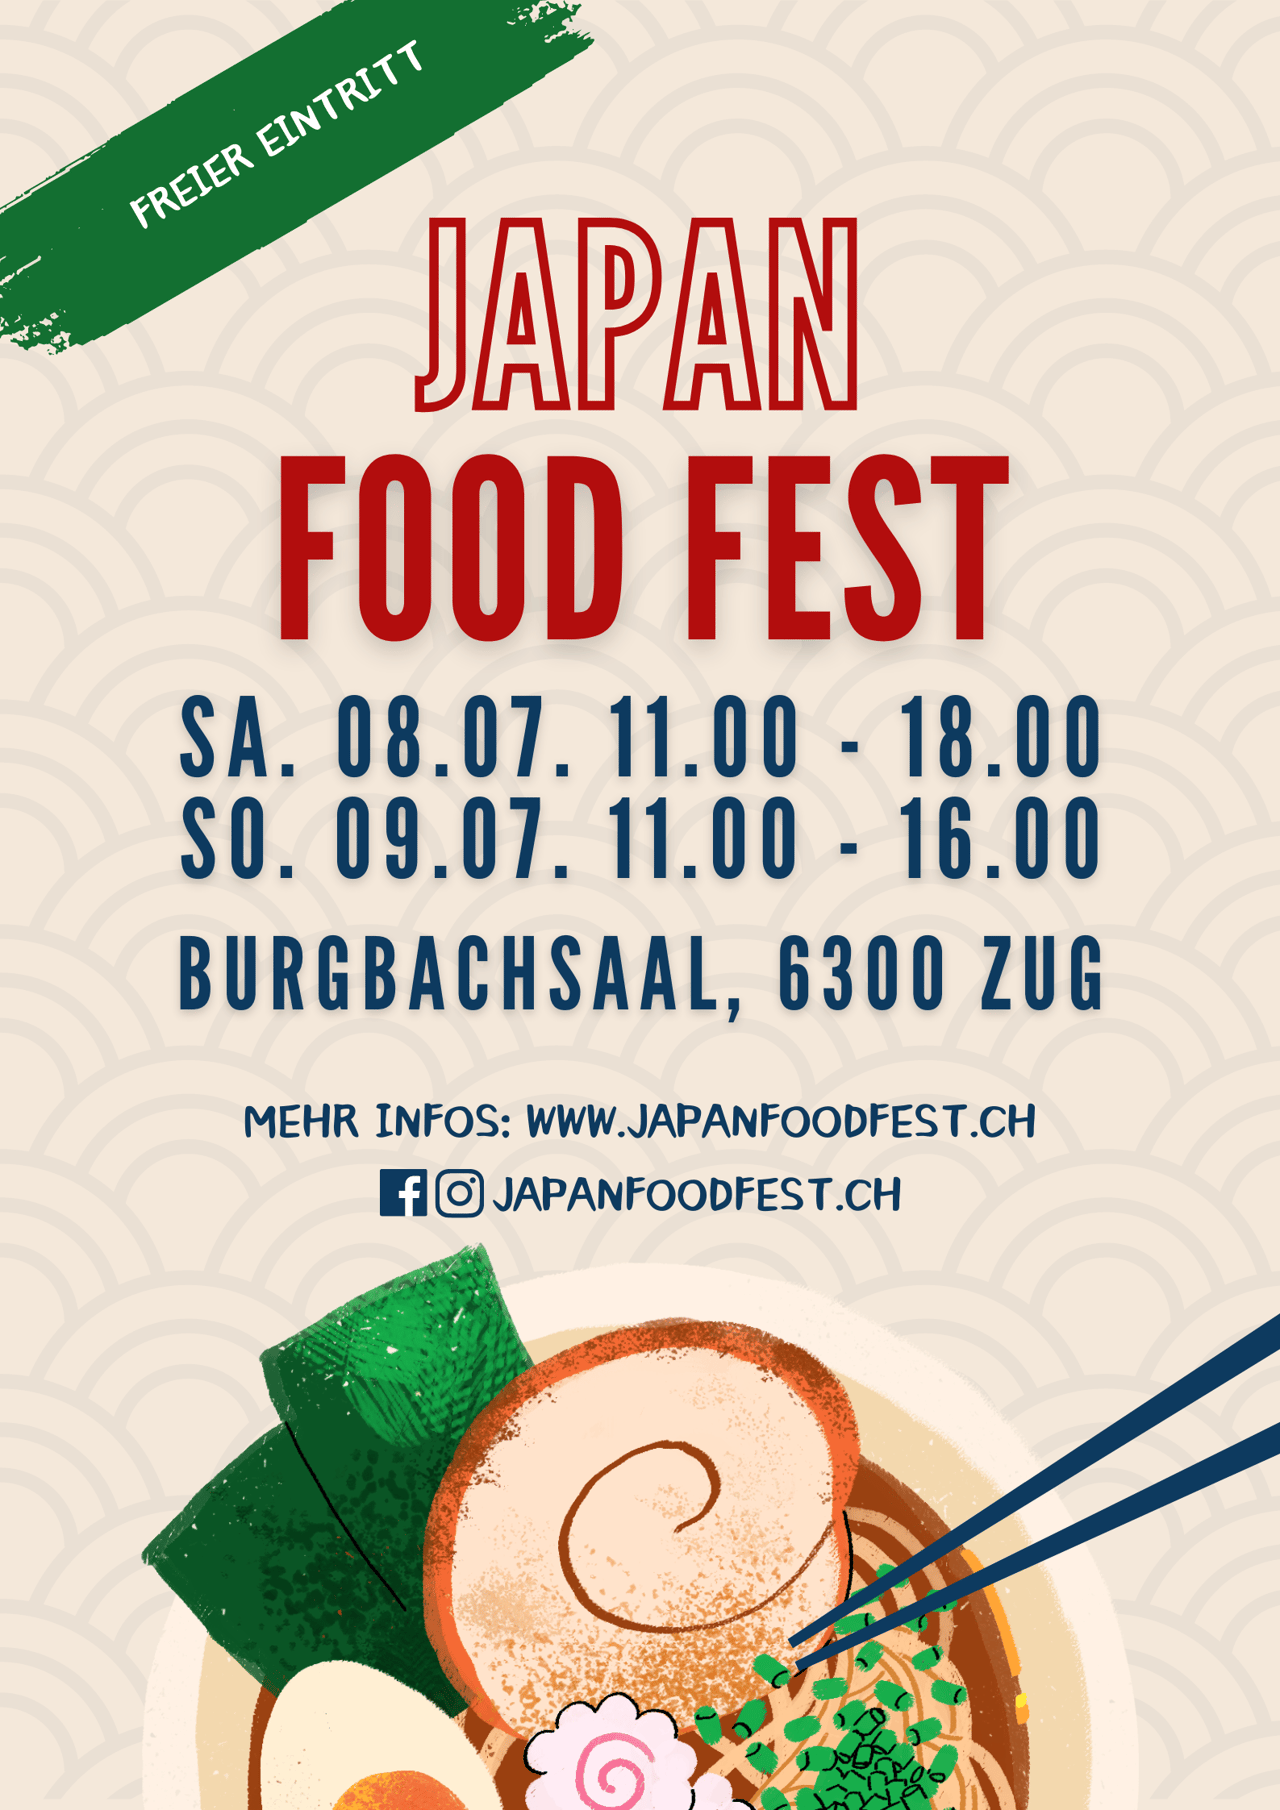 Japan Food fest poster